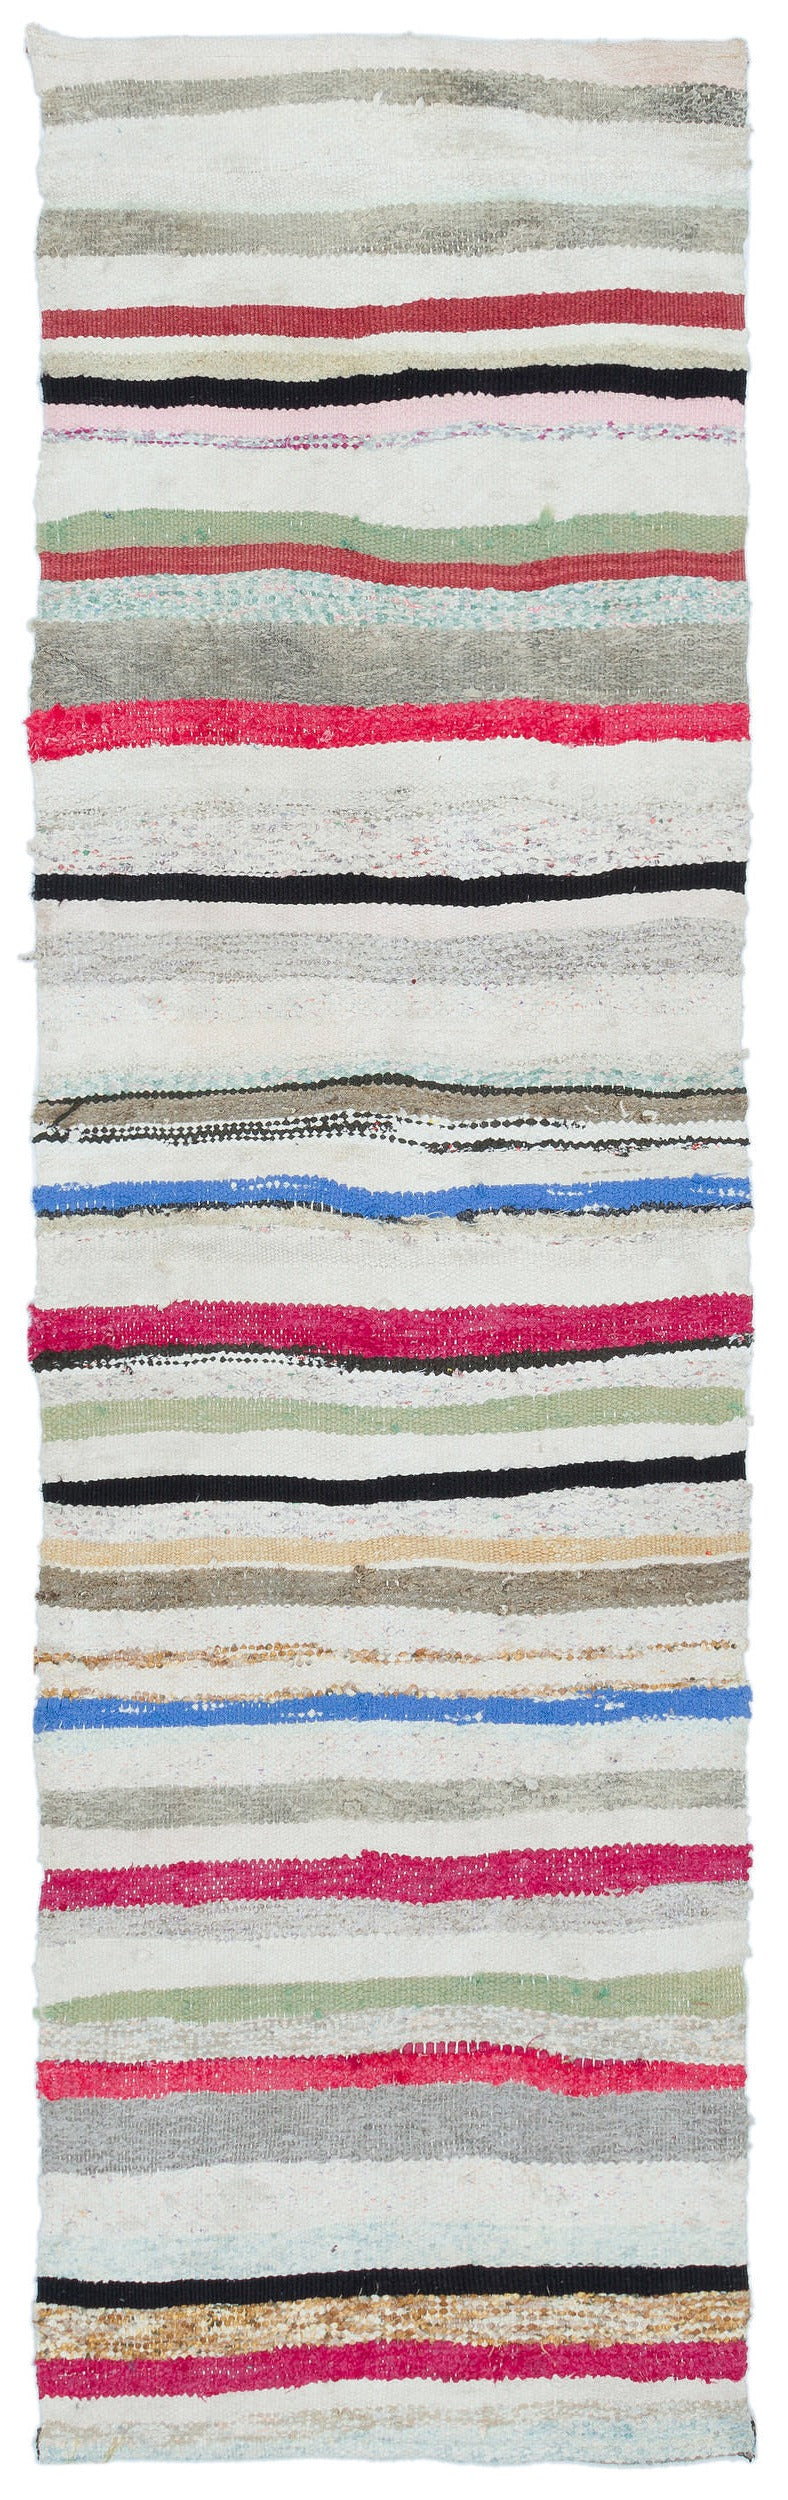 Cretan White Striped Wool Hand-Woven Carpet 062 x 222